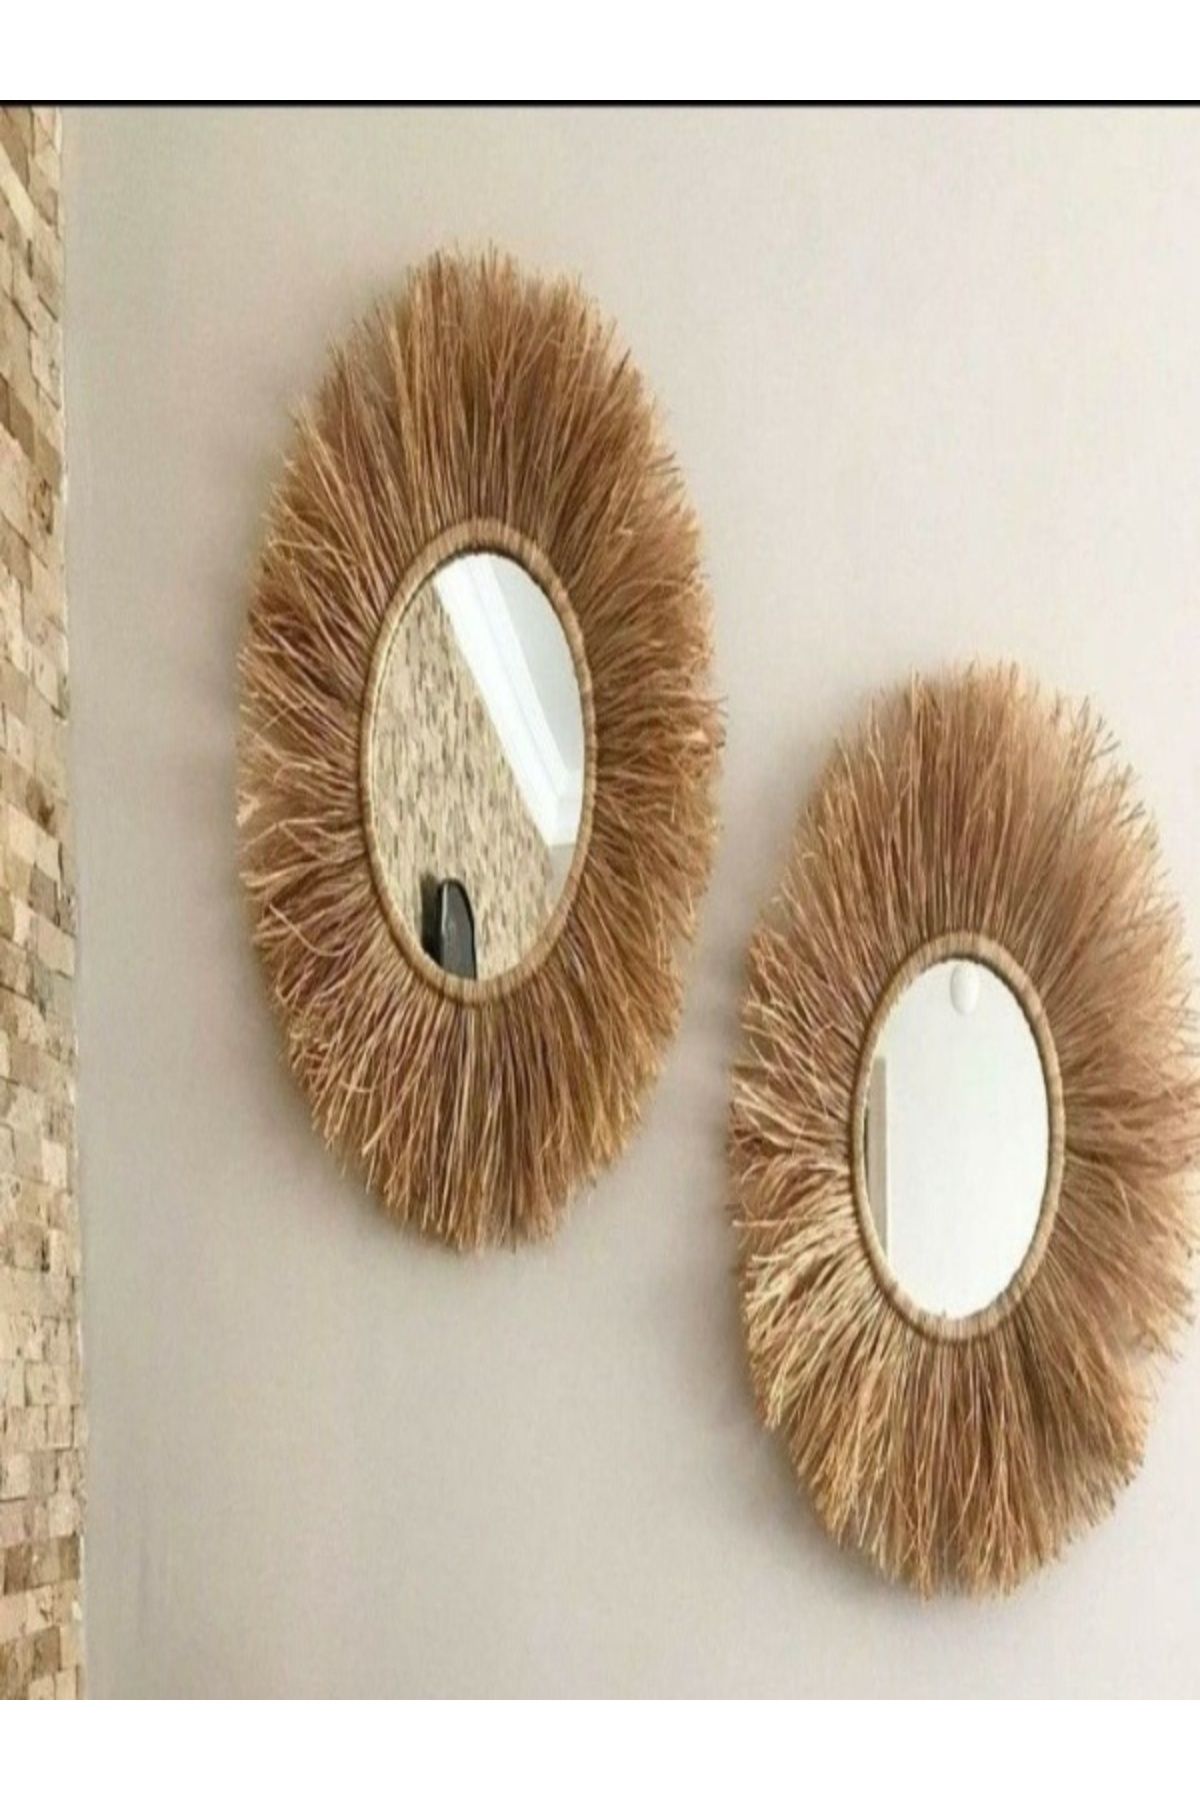 fn 2 Bohem RAFYA DOĞAL JÜT Dekoratif Parlak Şık Hasır Duvar Salon Süs Aynaları bebek odası EV modern